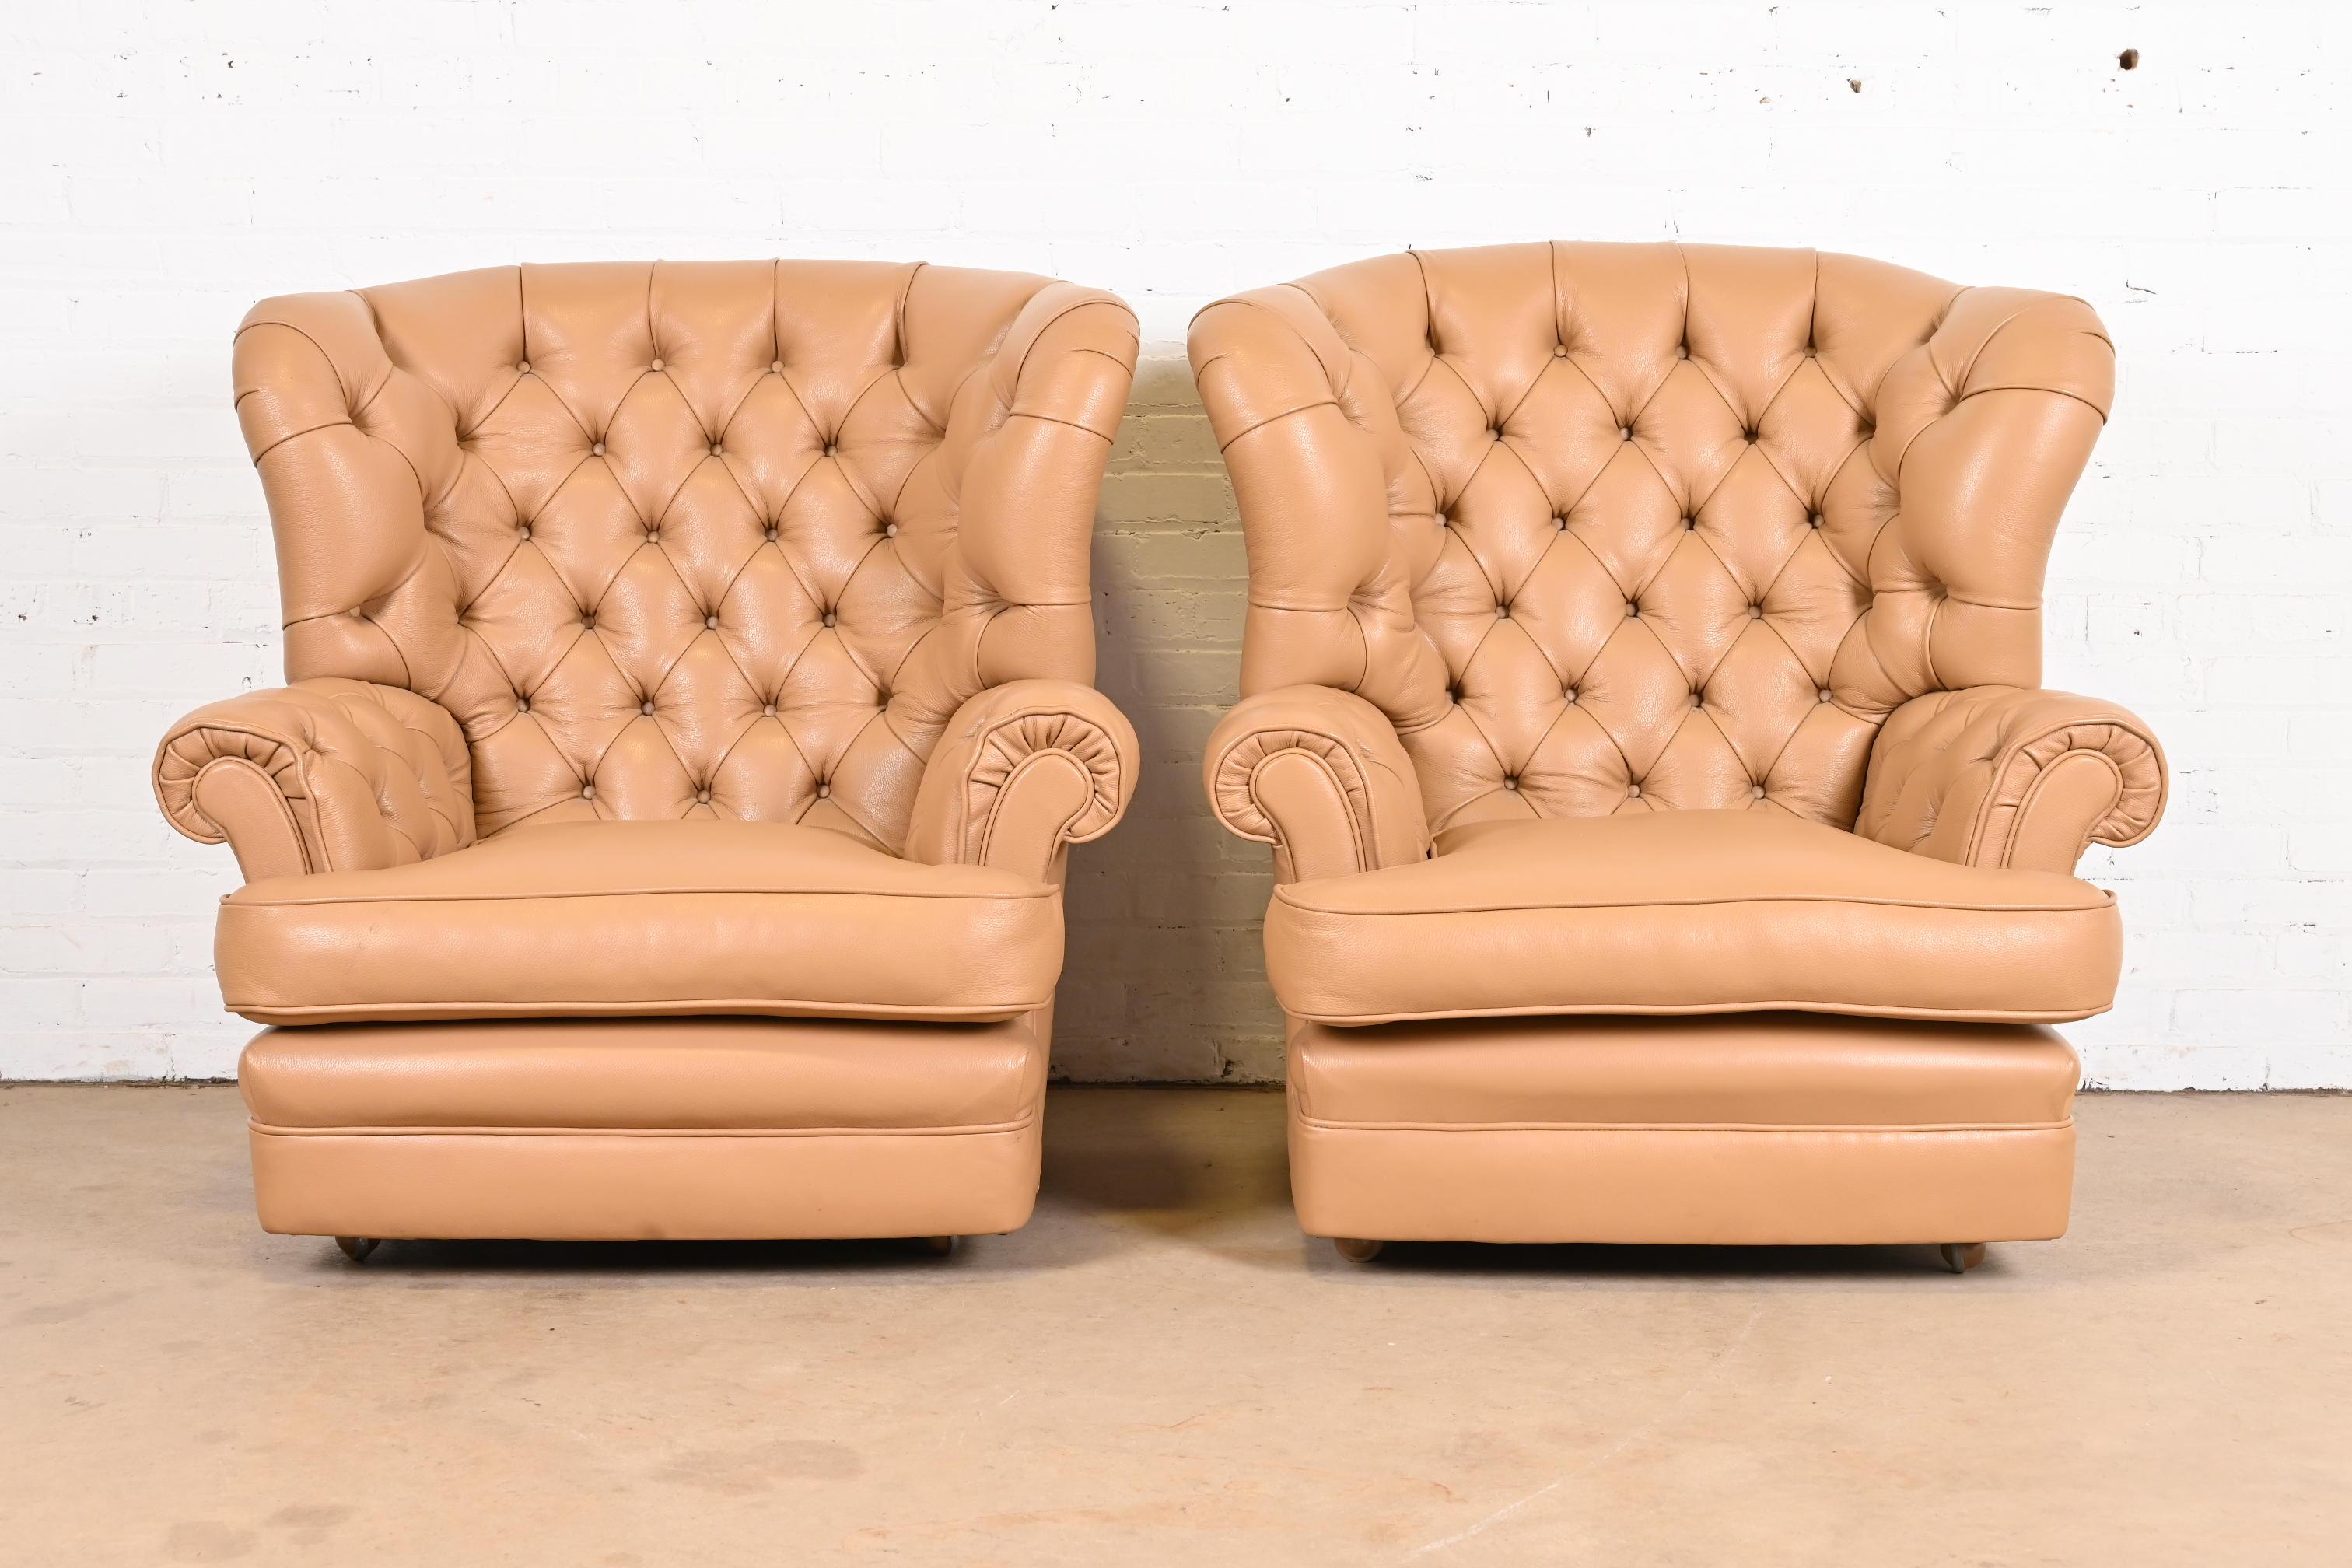 Ein wunderschönes Paar Chesterfield Sessel, Clubsessel oder Loungesessel im Chesterfield Stil

USA, Ende des 20. Jahrhunderts

Getuftetes Leder, auf Rollen.

Maße: 38 